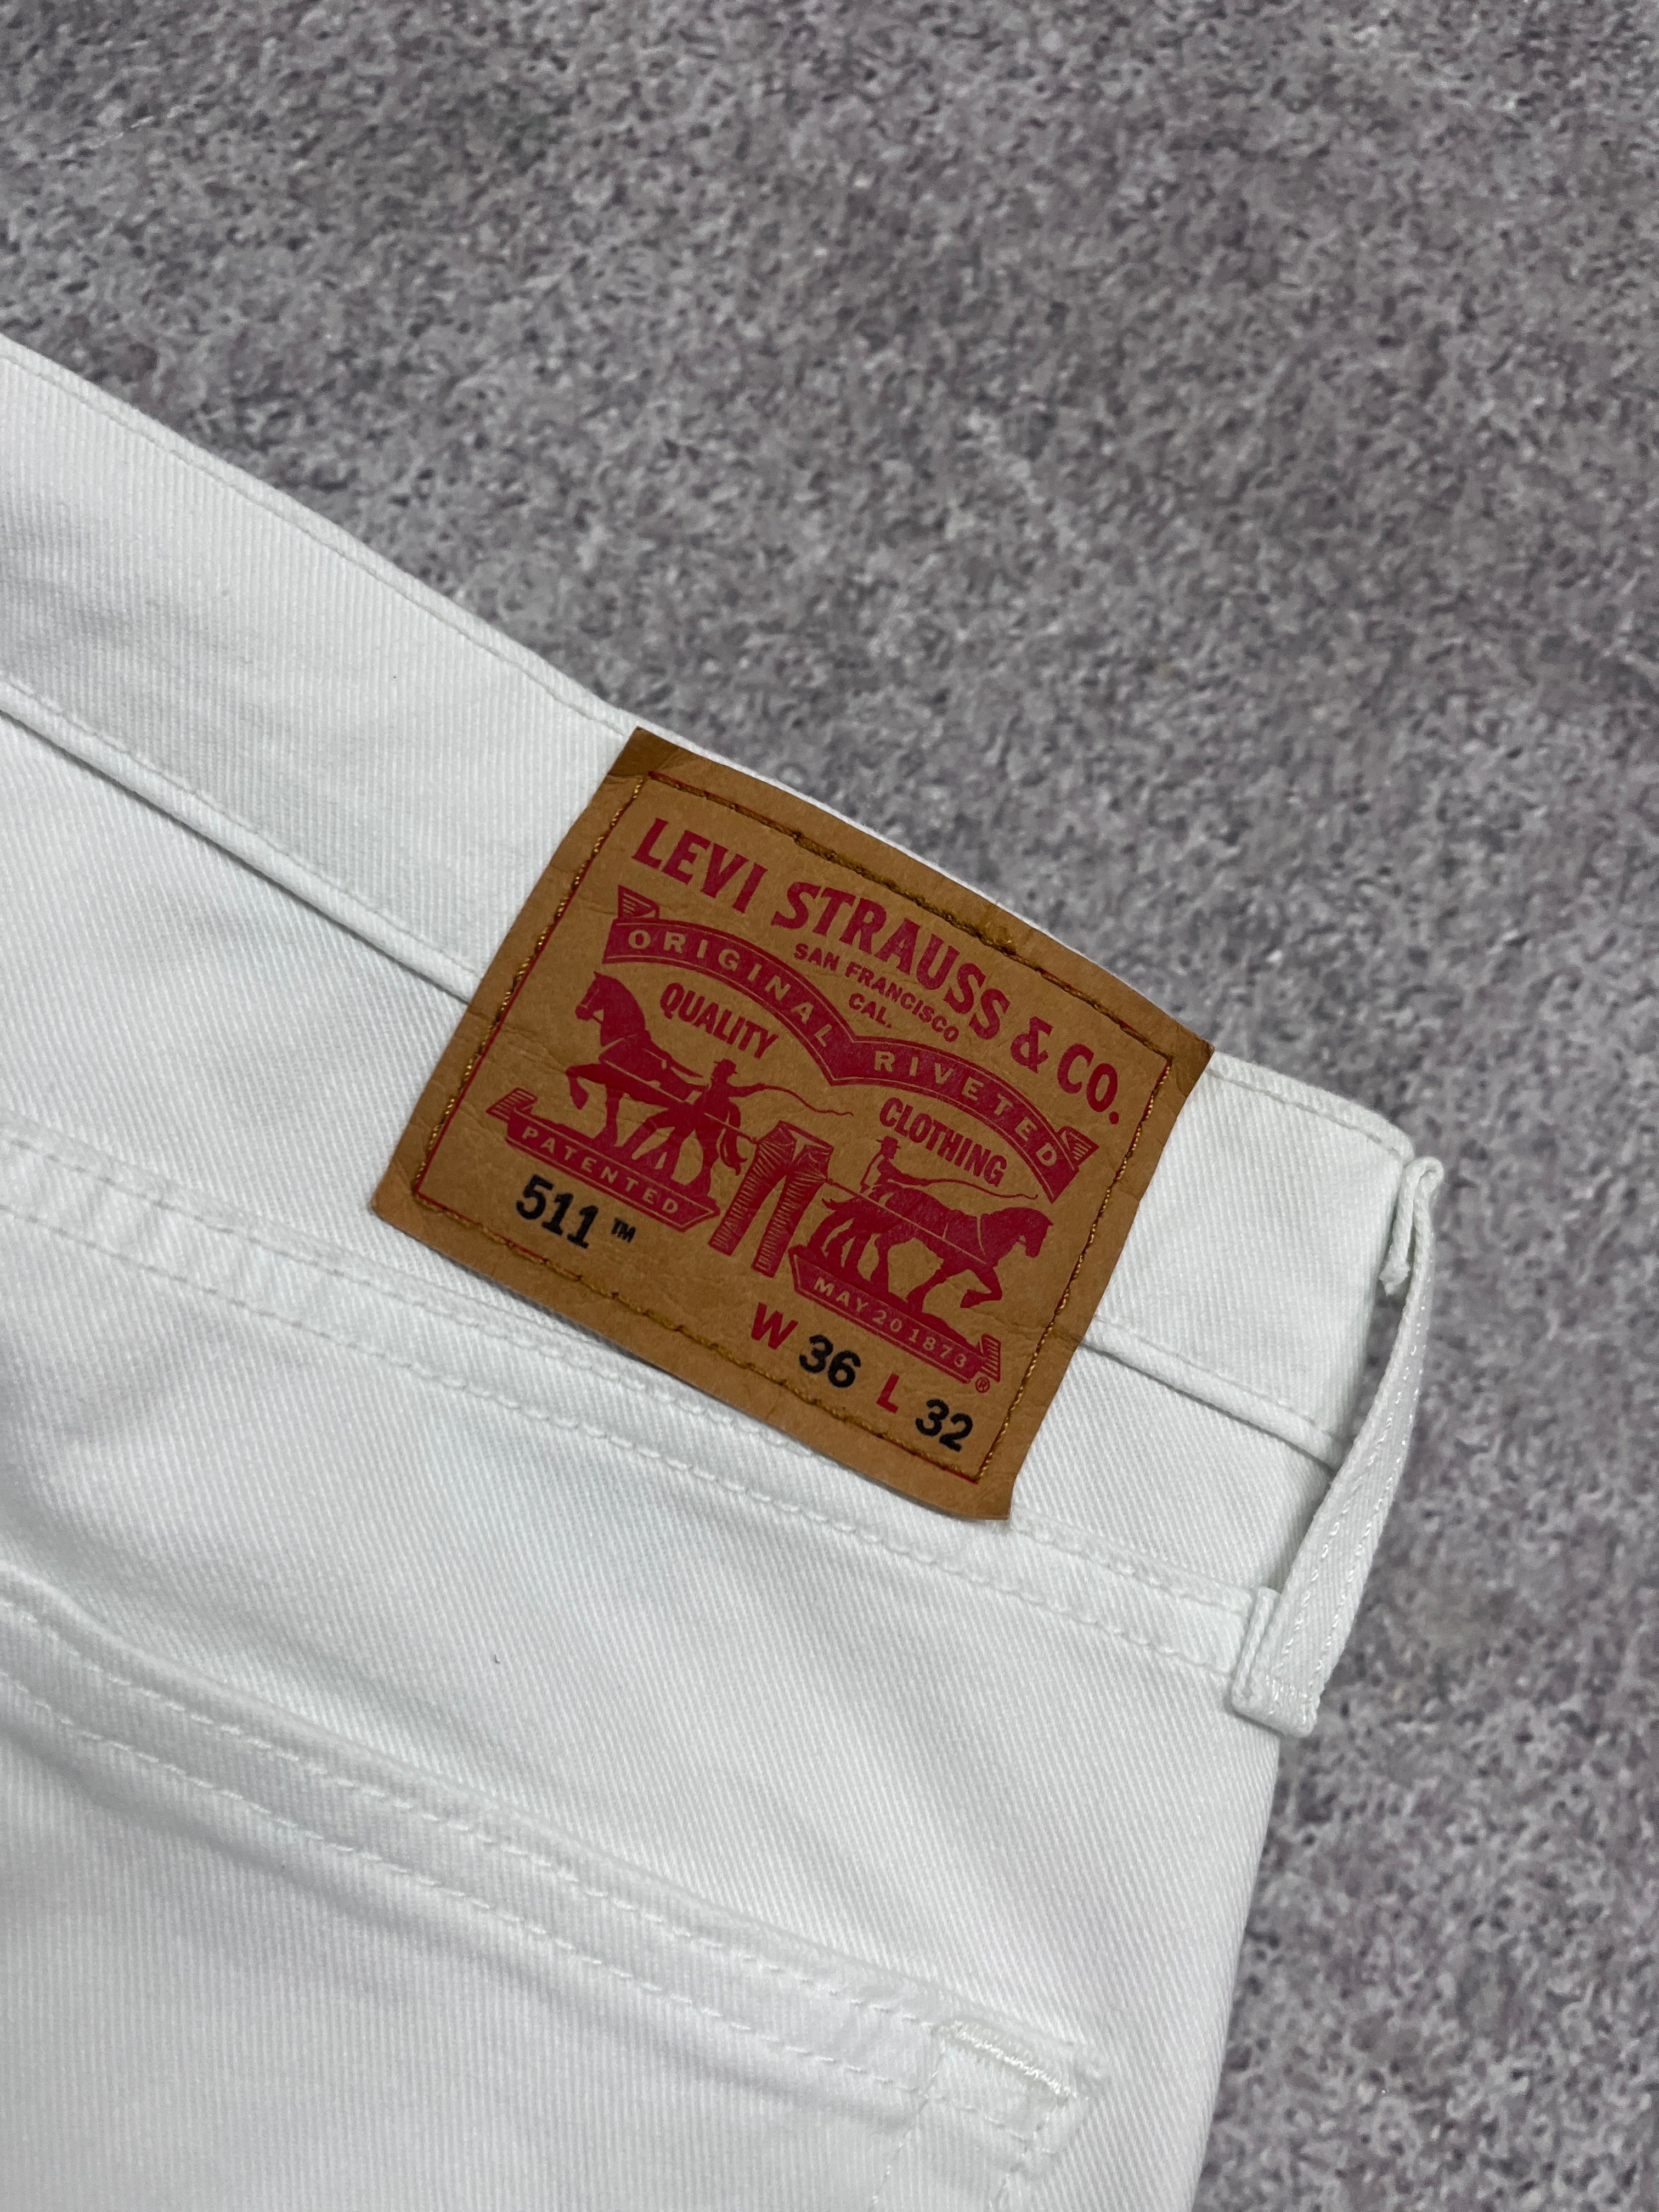 Vintage Levi 511 Denim Jeans White // W36 L32 - RHAGHOUSE VINTAGE